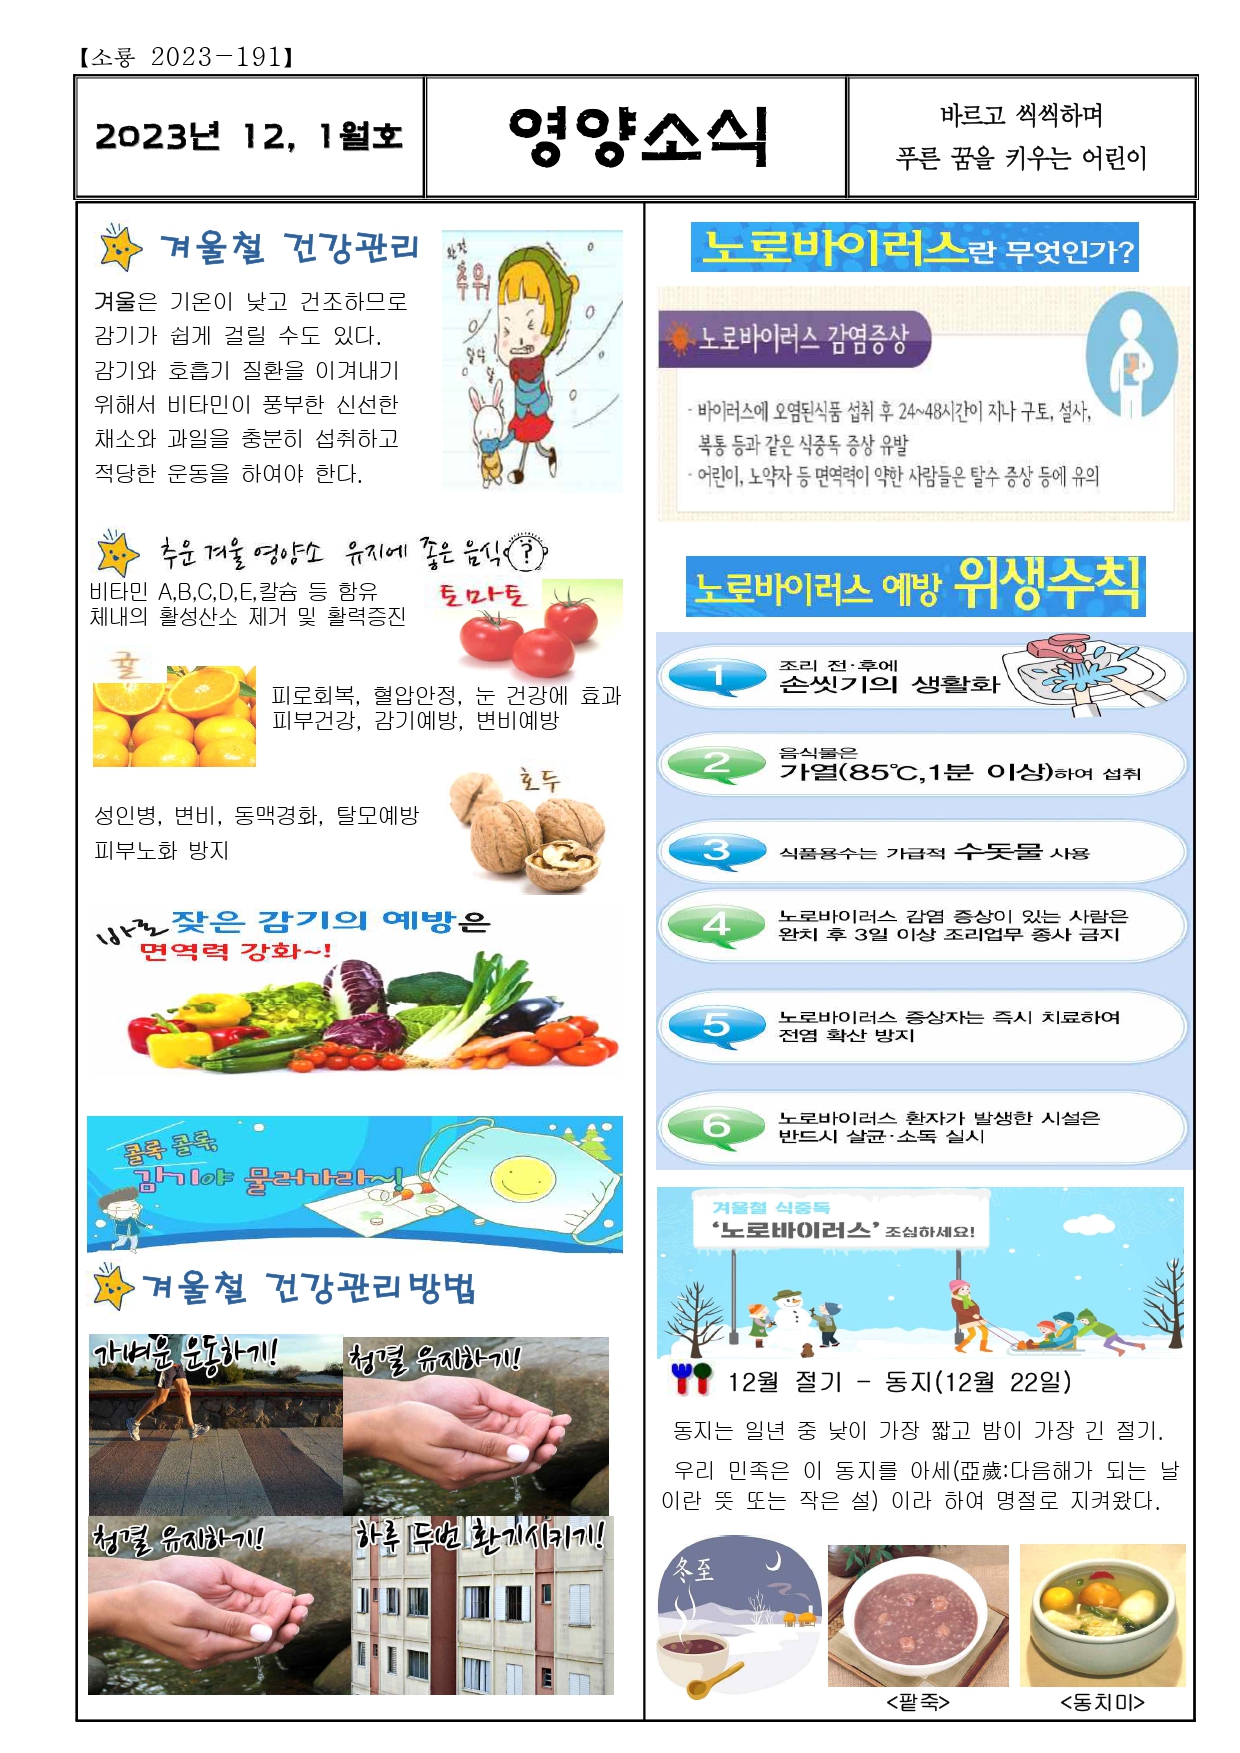 12,1월 영양소식(겨울철건강관리)_page-0001